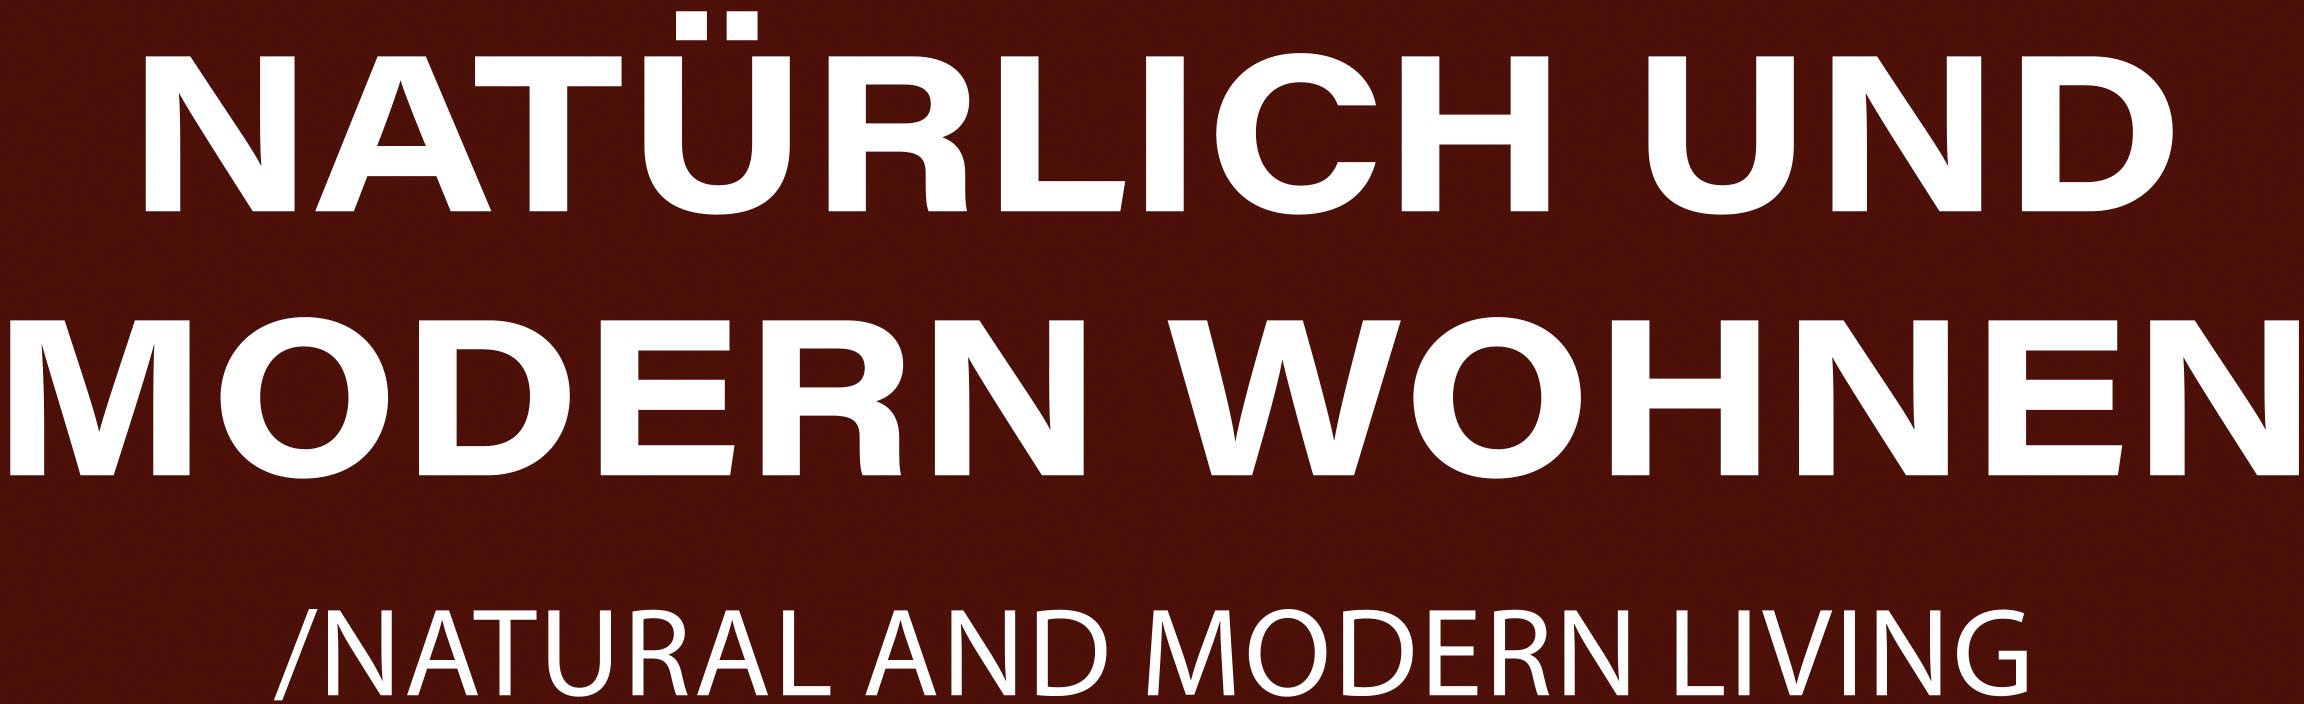 FISCHER & HONSEL Pendelleuchte »Shine-Wood«, 3 flammig-flammig, made in Germany, langlebige LED